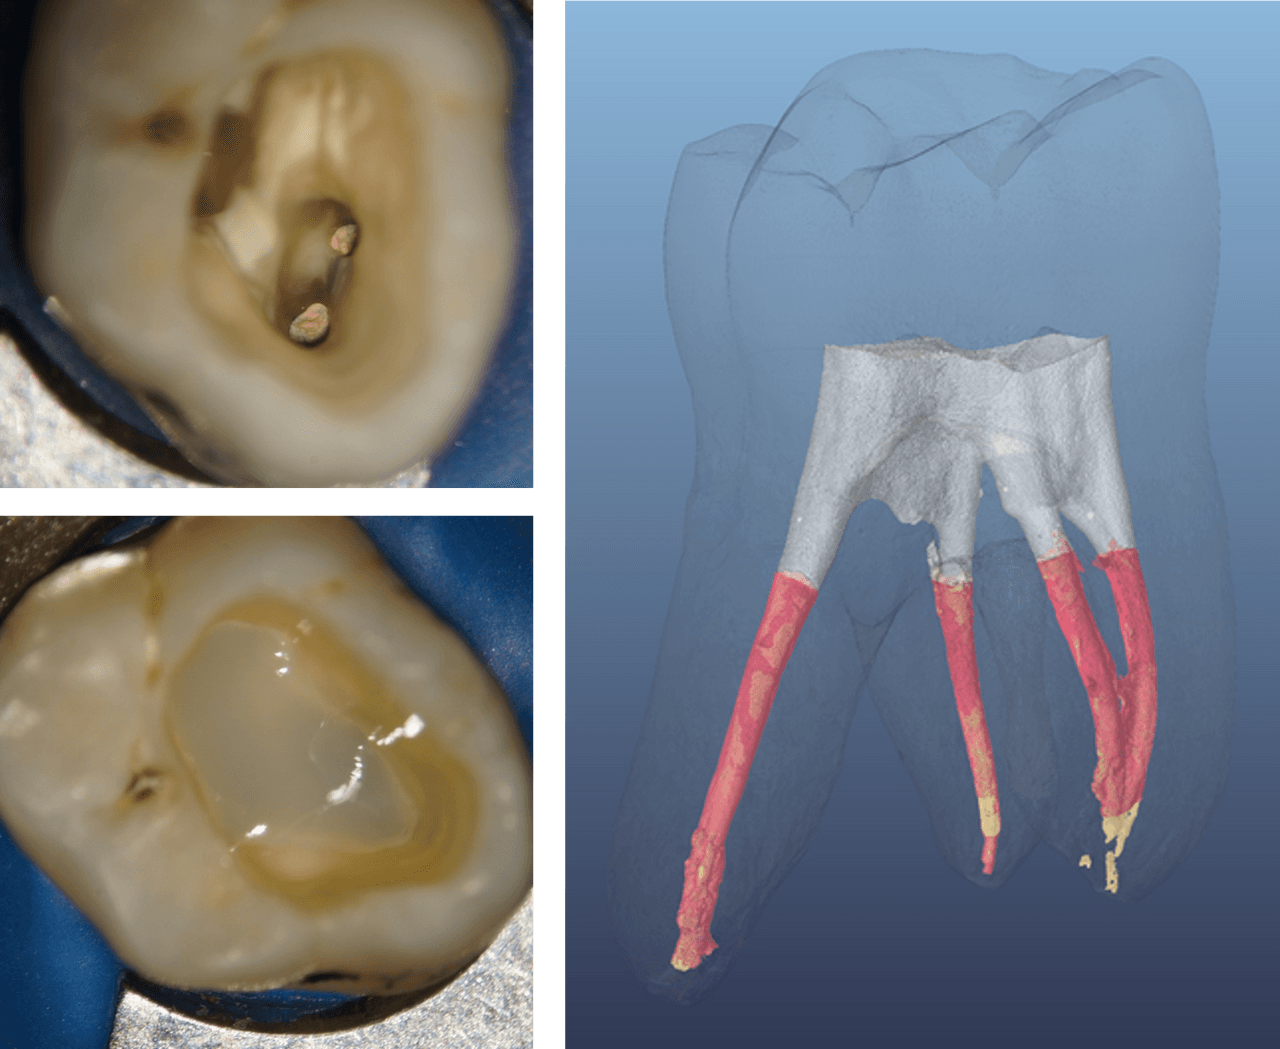 Figure 4 Analyse de la couche SDR flow+ initiale dans une cavité de classe I post-endodontique, à l'aide d'un micro-CT. La couche SDR flow+ (grise) montre un joint étanche aux parois de la cavité ainsi qu'une bonne adaptation au matériau d'obturation (rouge). (Source image : Paqué F., 2014 (réf. 14.1483))